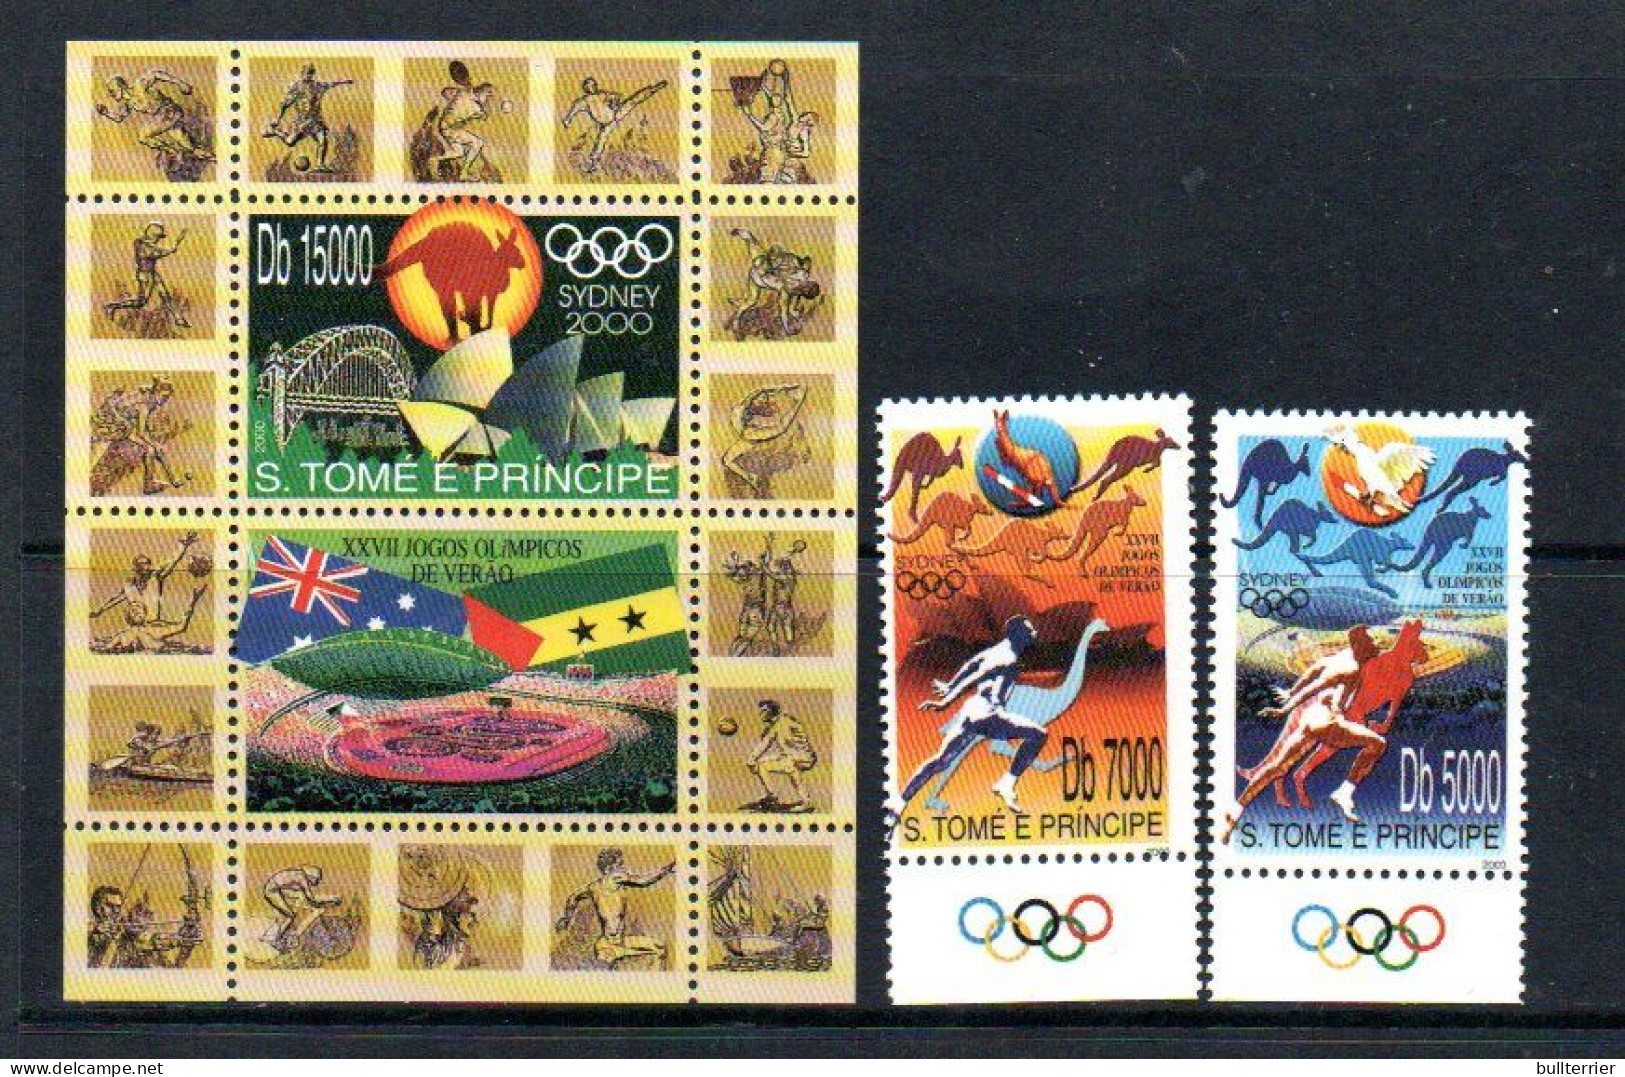 OLYMPICS -  ST HOMAS PRINCE -  2000-Sydney Olympics Set Of 2 + S/sheet  Mint Never Hinged - Verano 2000: Sydney